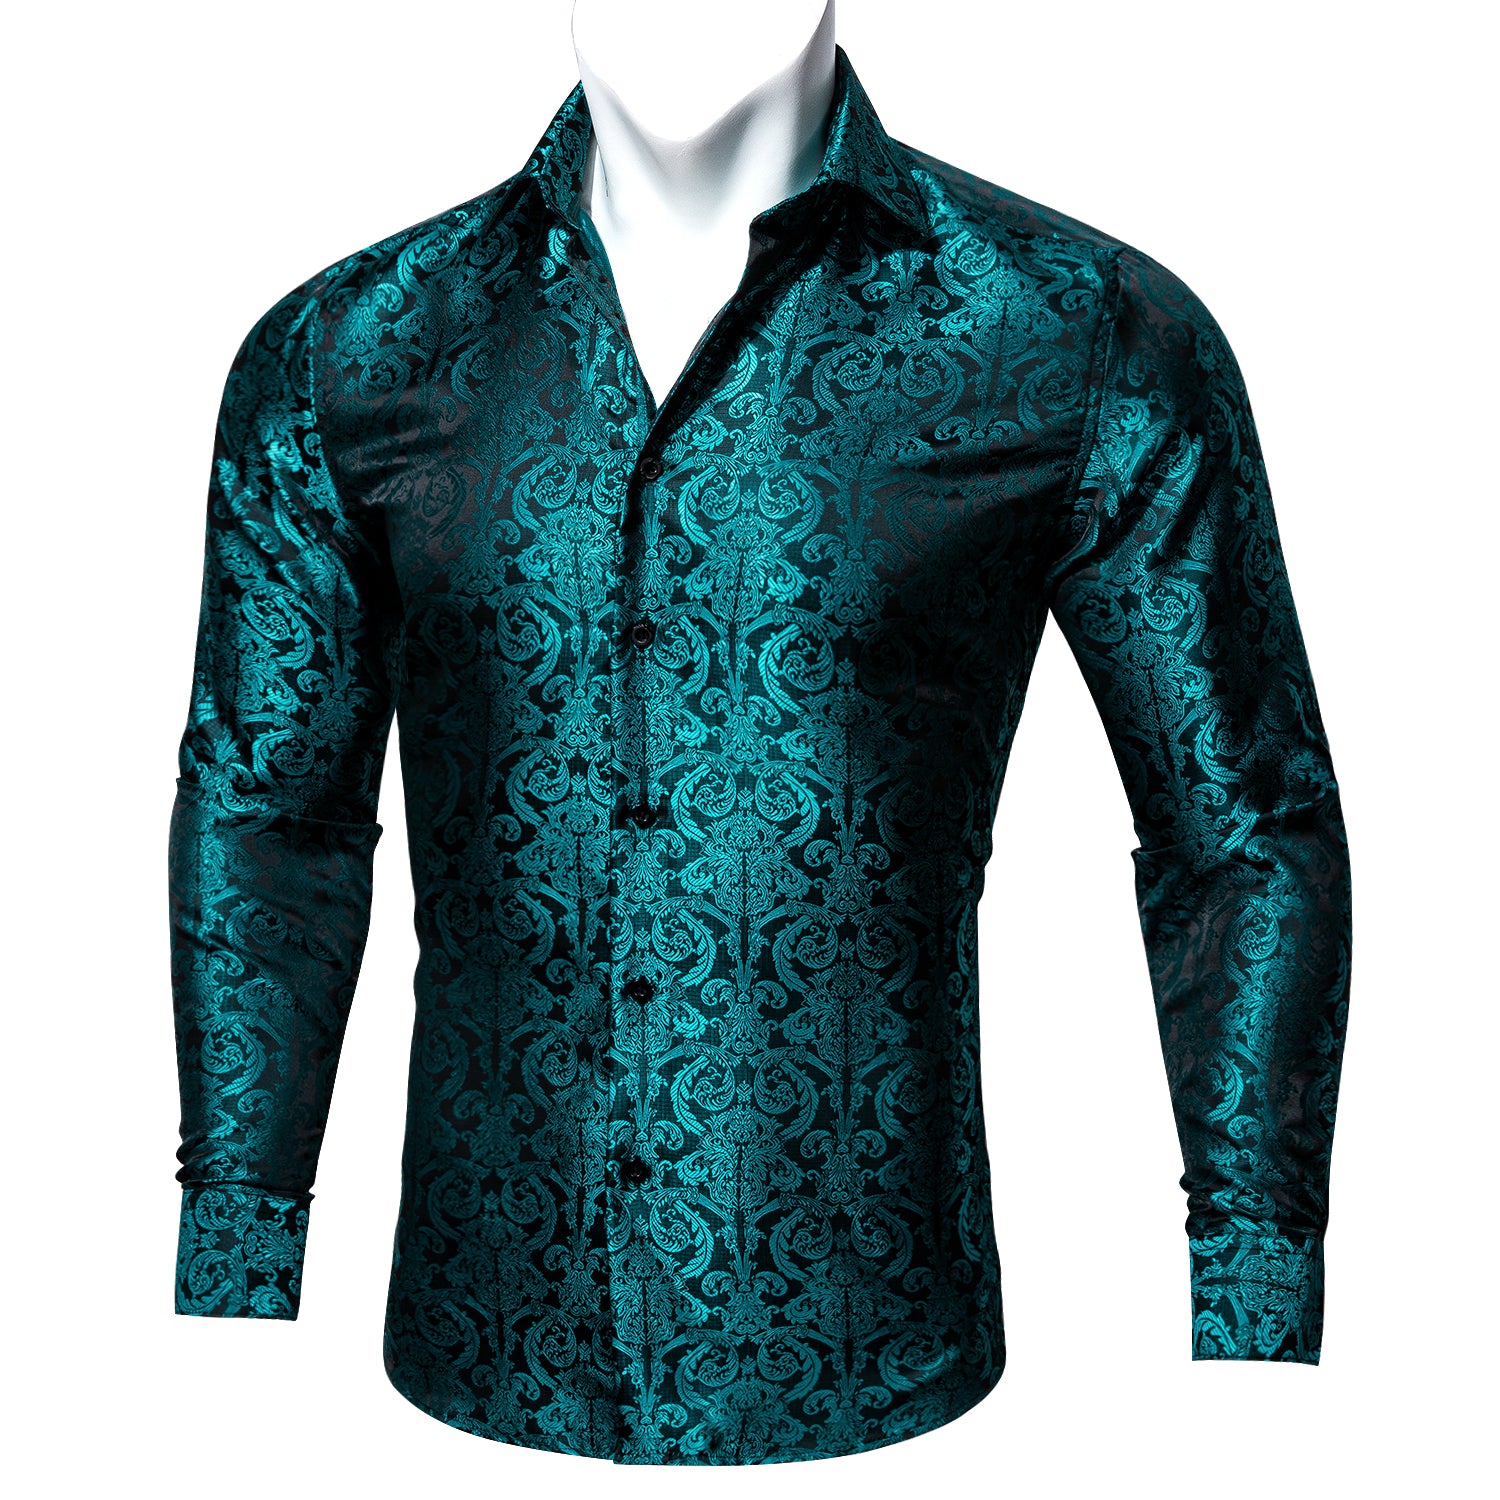 Barry.wang Blue Floral Silk Men's Long Sleeve Shirt